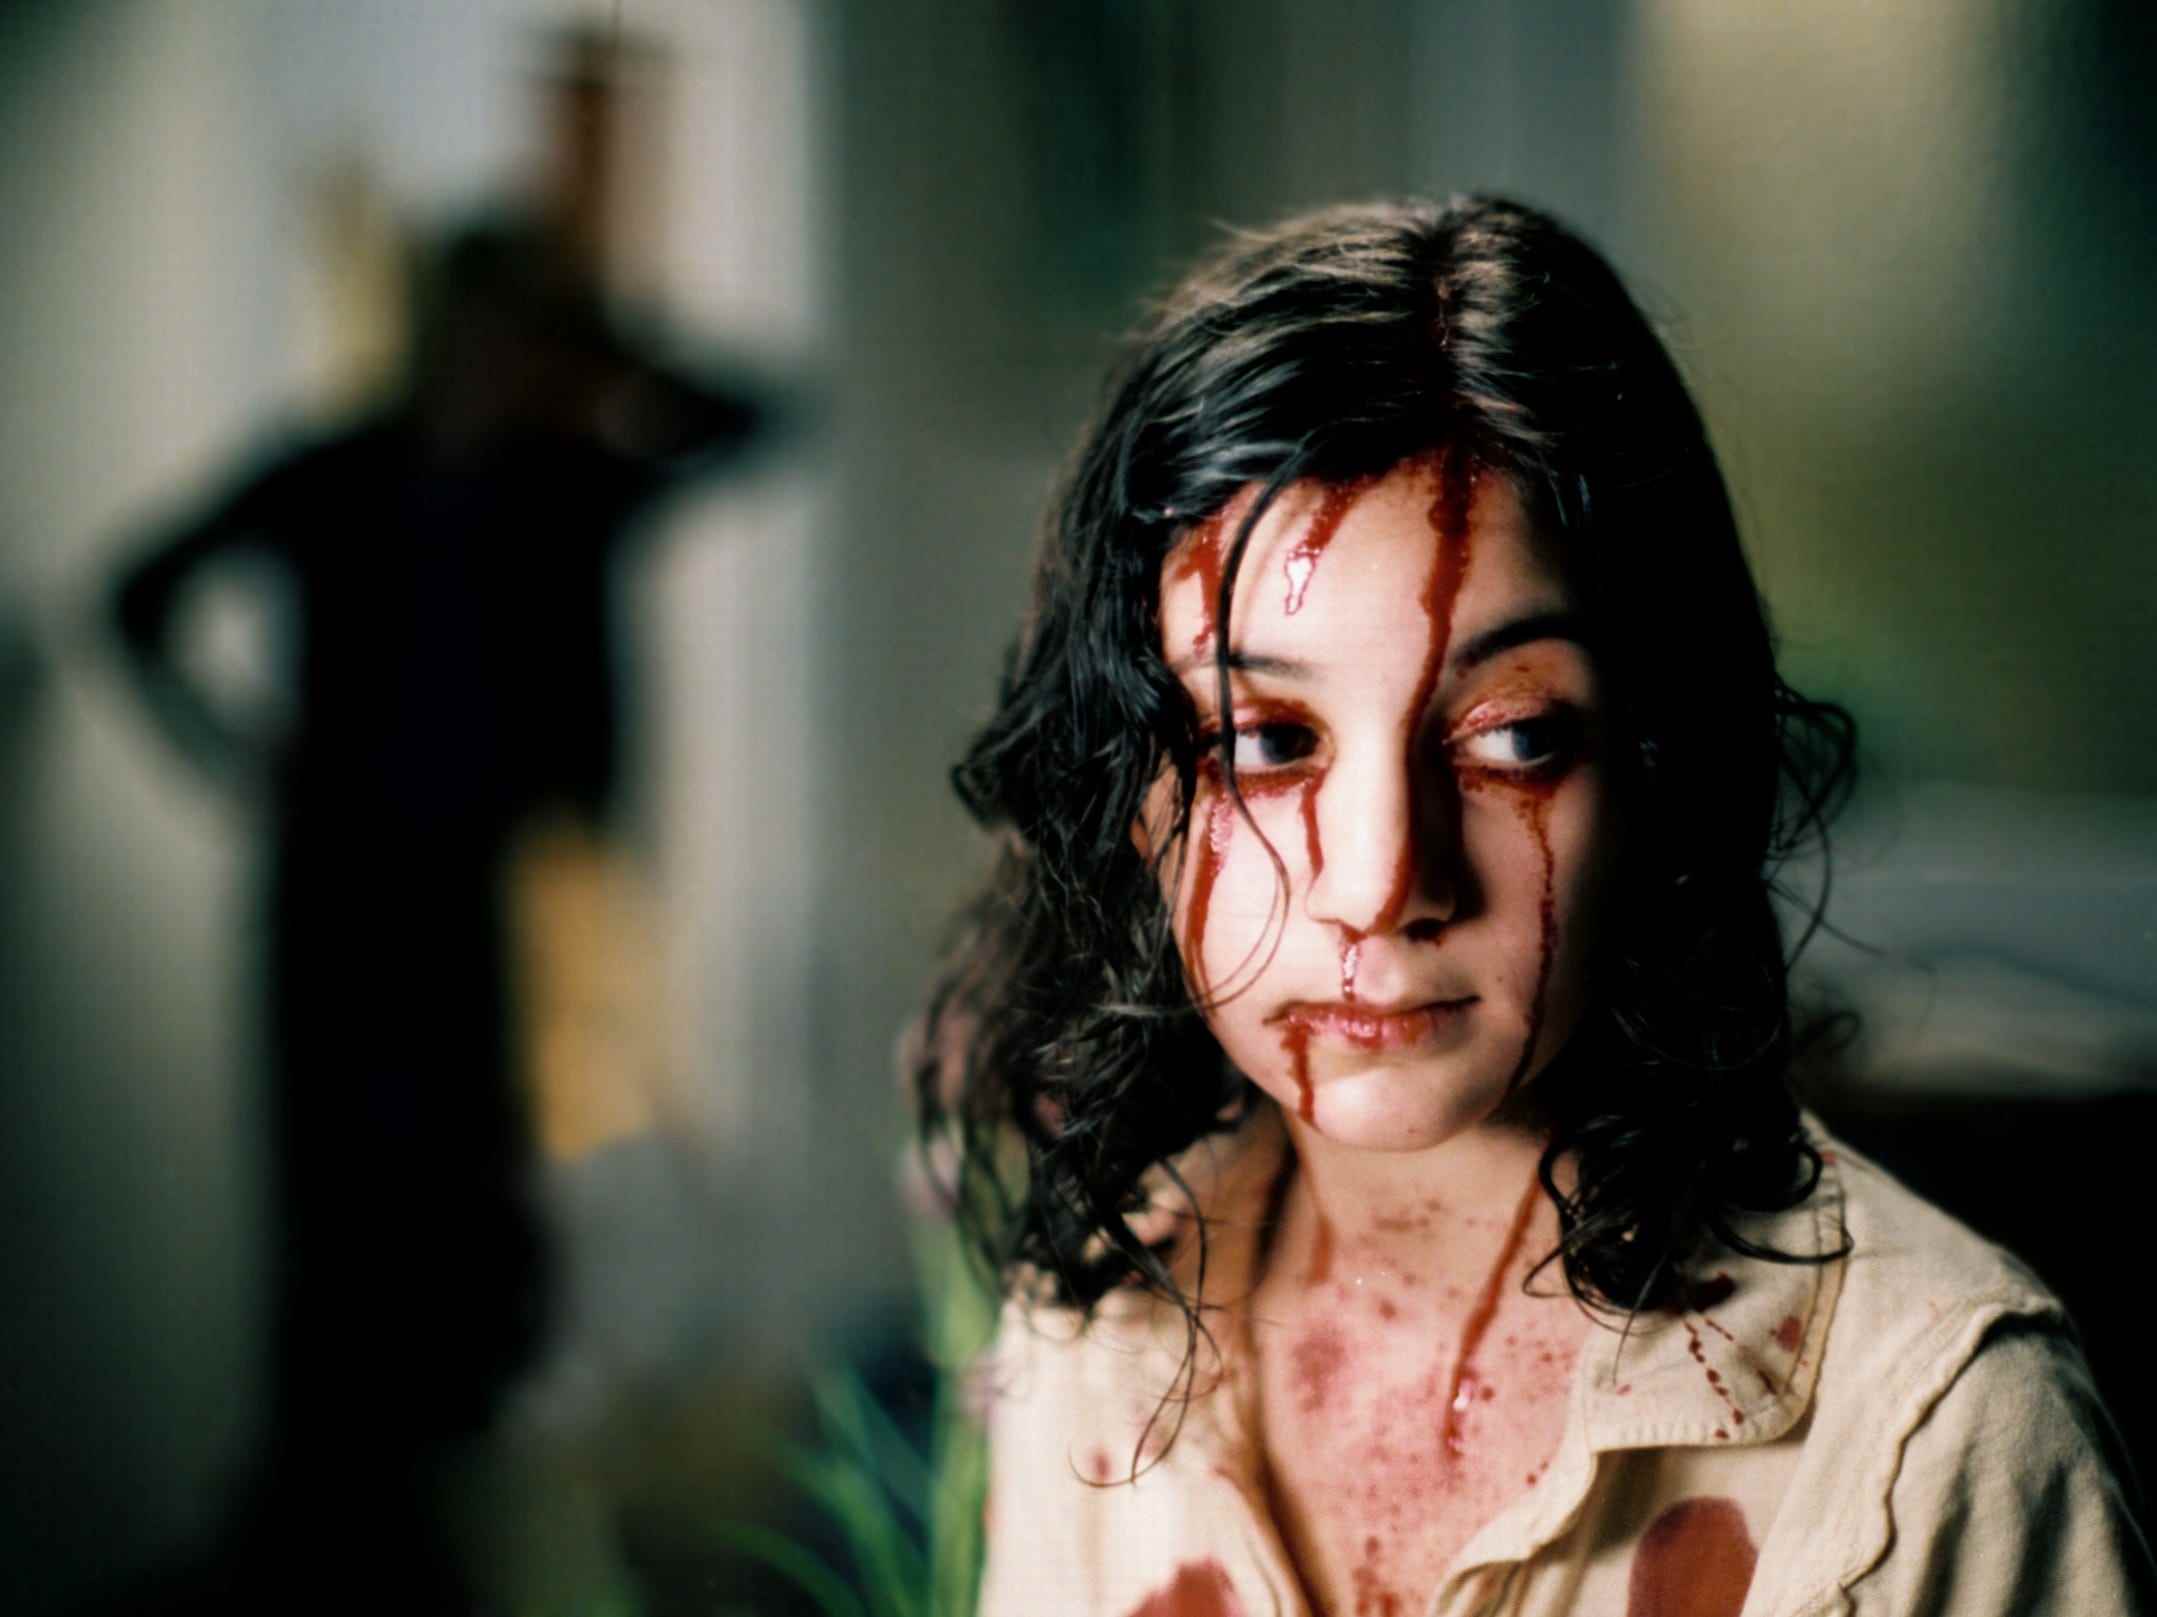 Ein Standbild aus dem Horrorfilm „Let the Right One In“, in dem ein junges Mädchen mit dunklen Haaren steht, Blut tropft ihr übers Gesicht, und links steht eine Gestalt im Schatten.